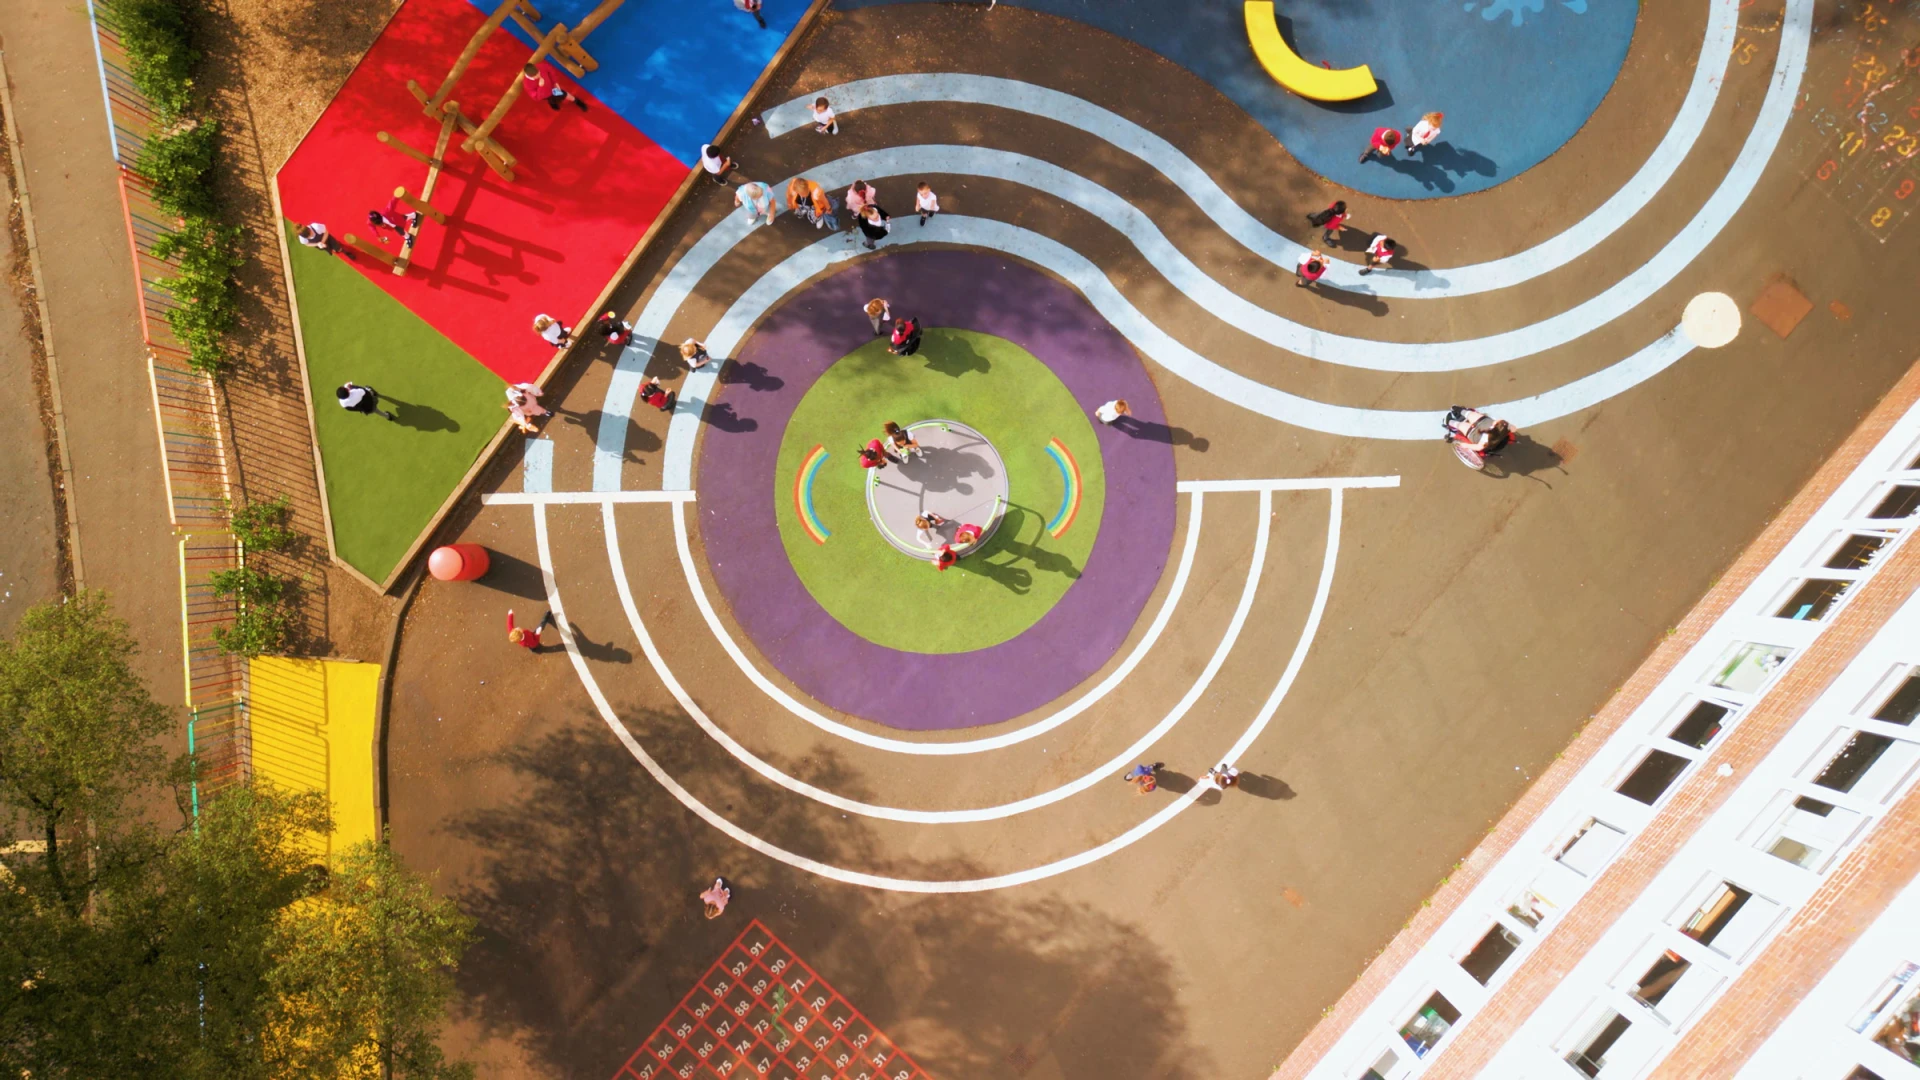 Vista aérea de un patio de recreo de una escuela infantil con pavimento de vertido húmedo